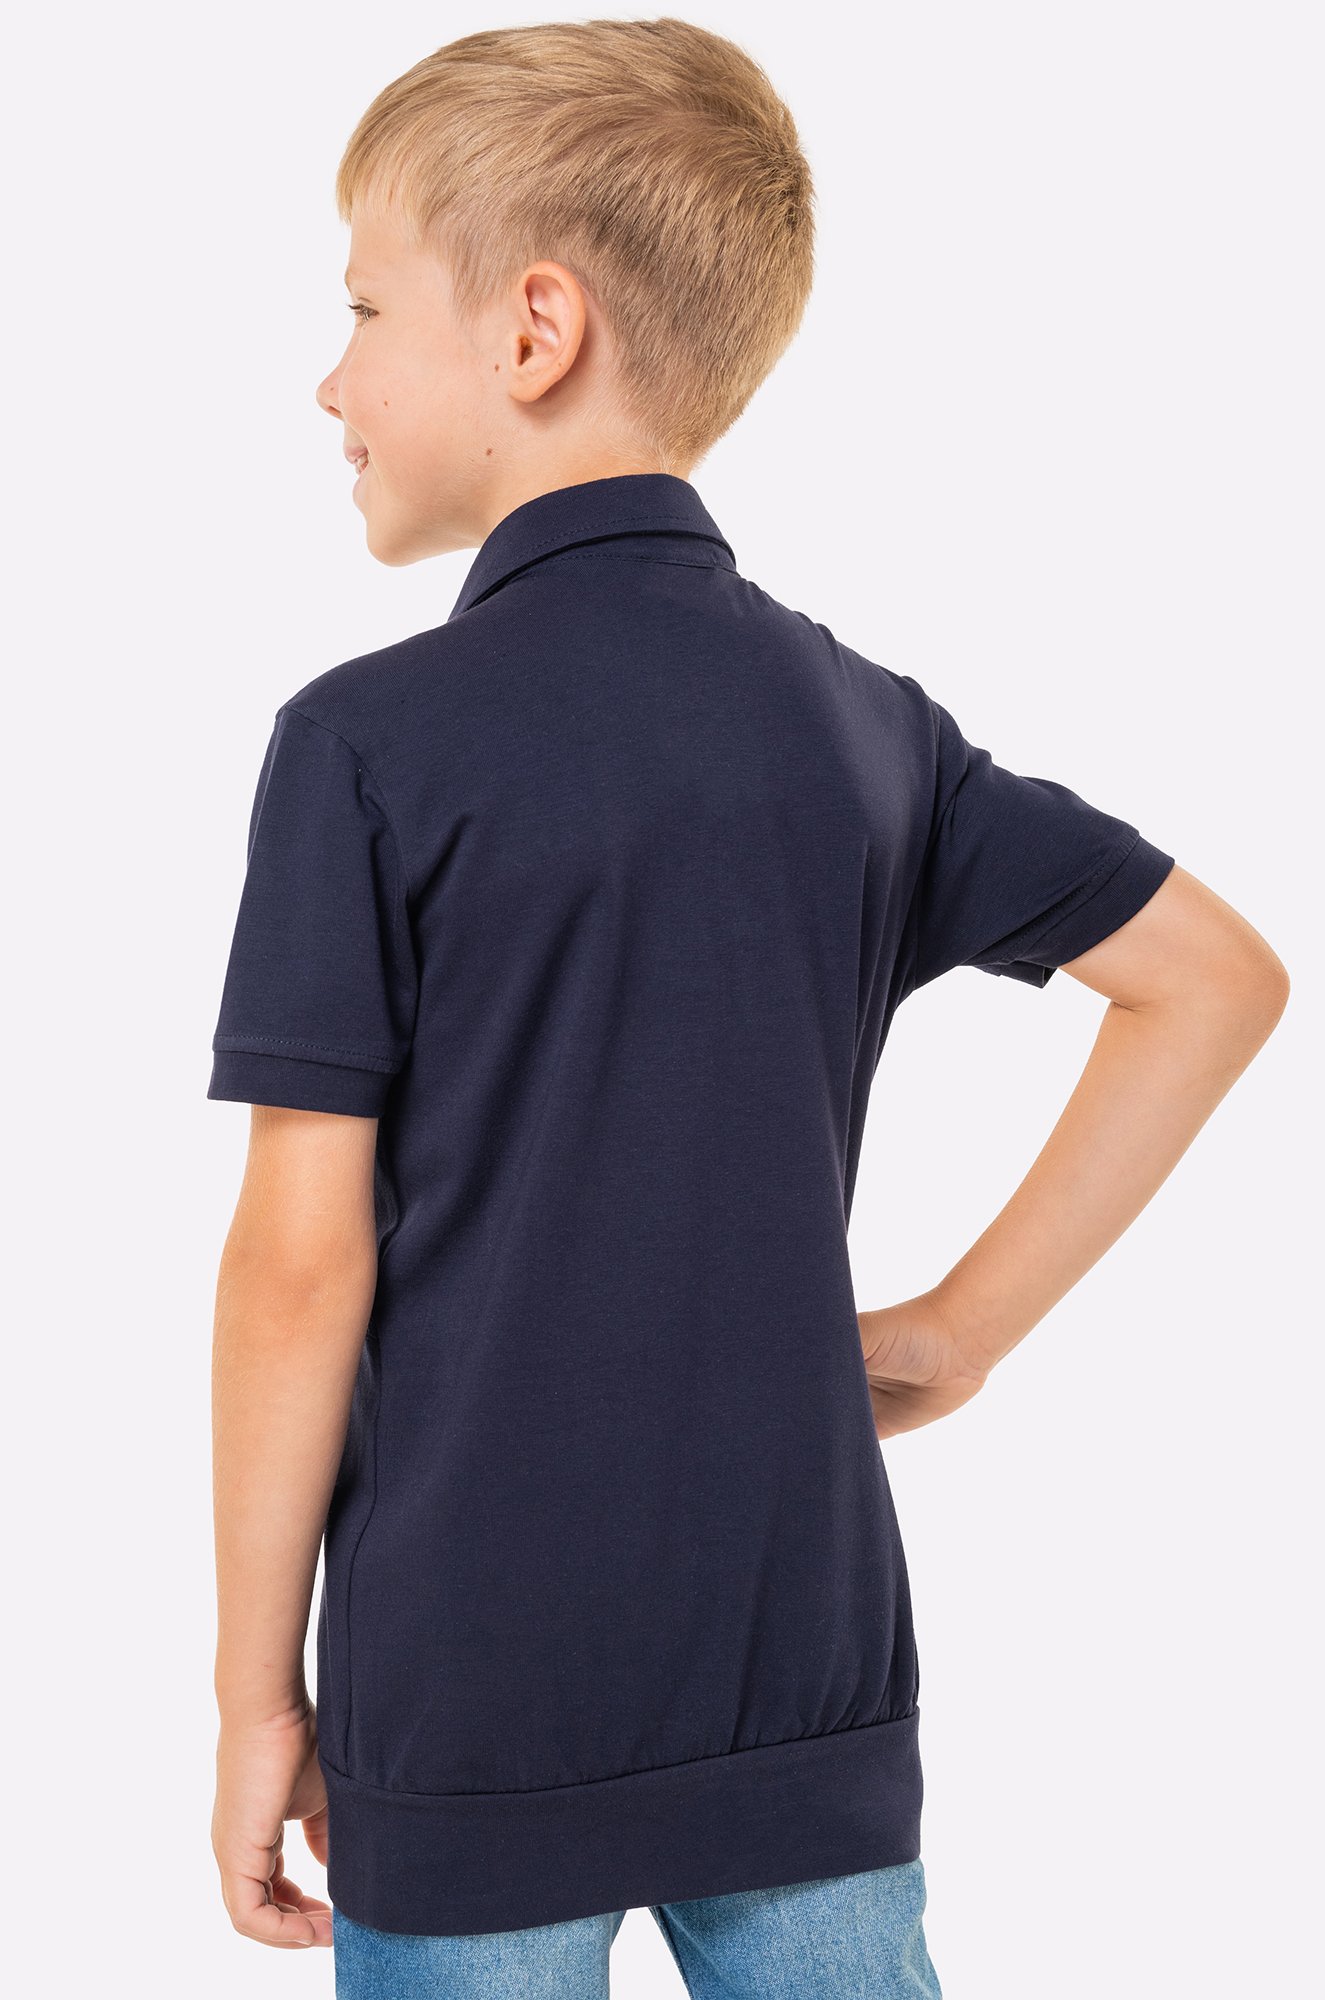 Рубашка-поло для мальчика Blueland